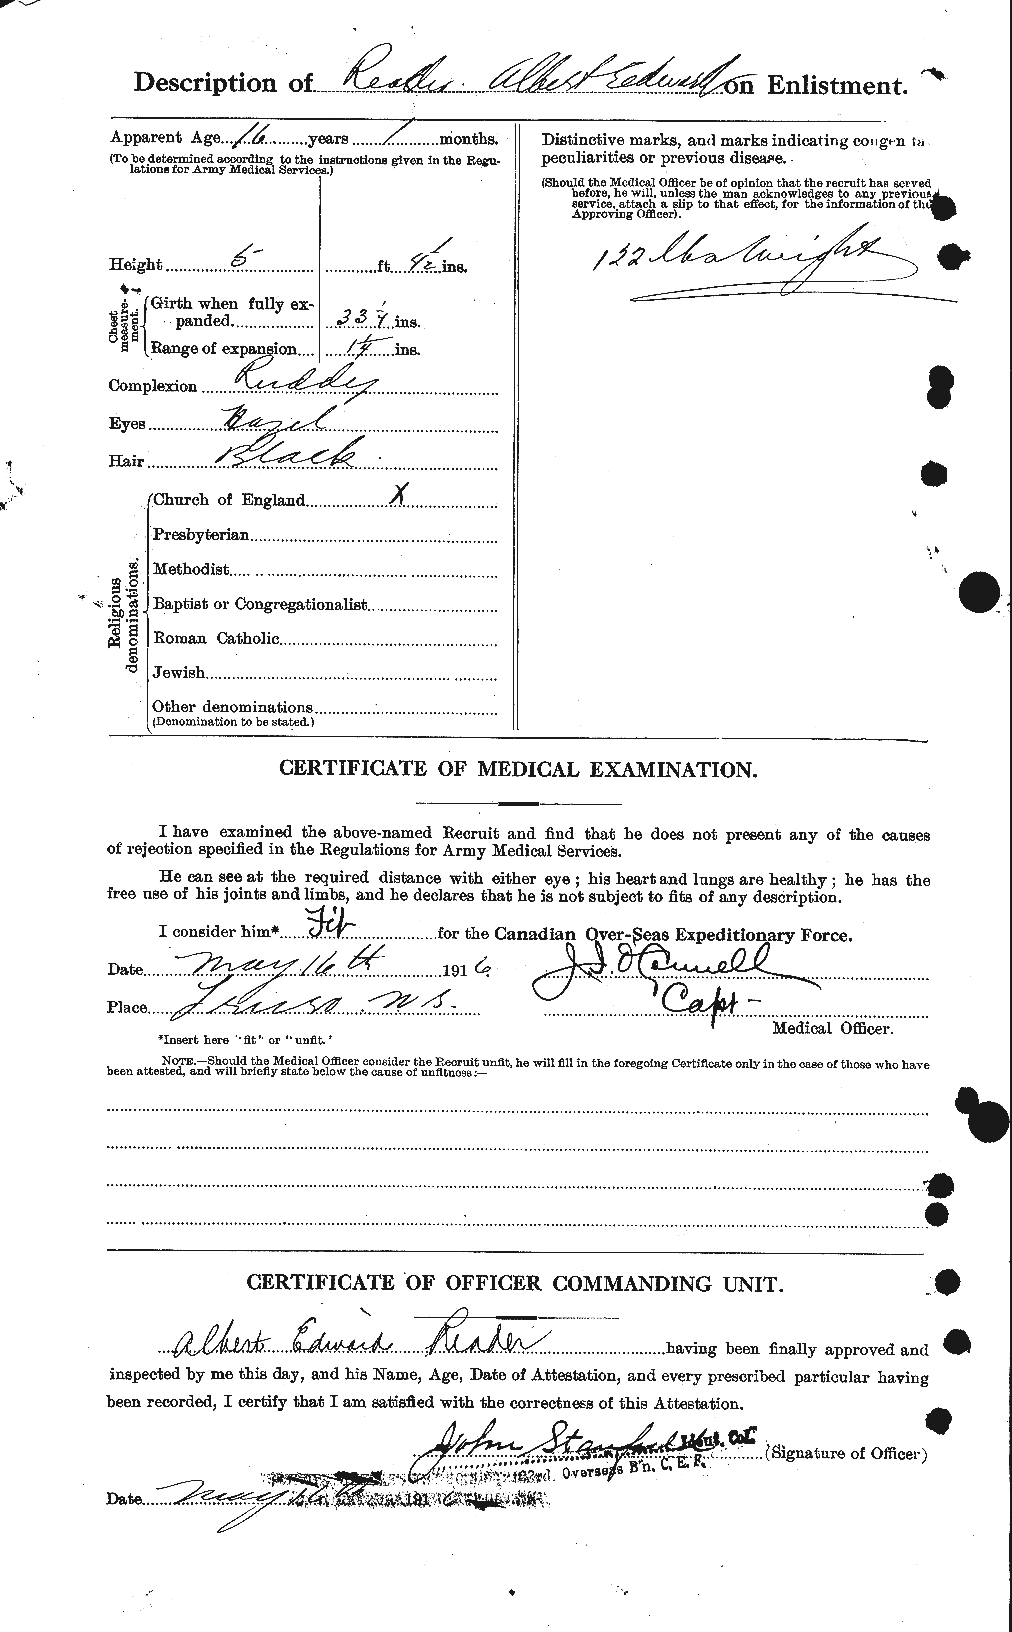 Dossiers du Personnel de la Première Guerre mondiale - CEC 598381b